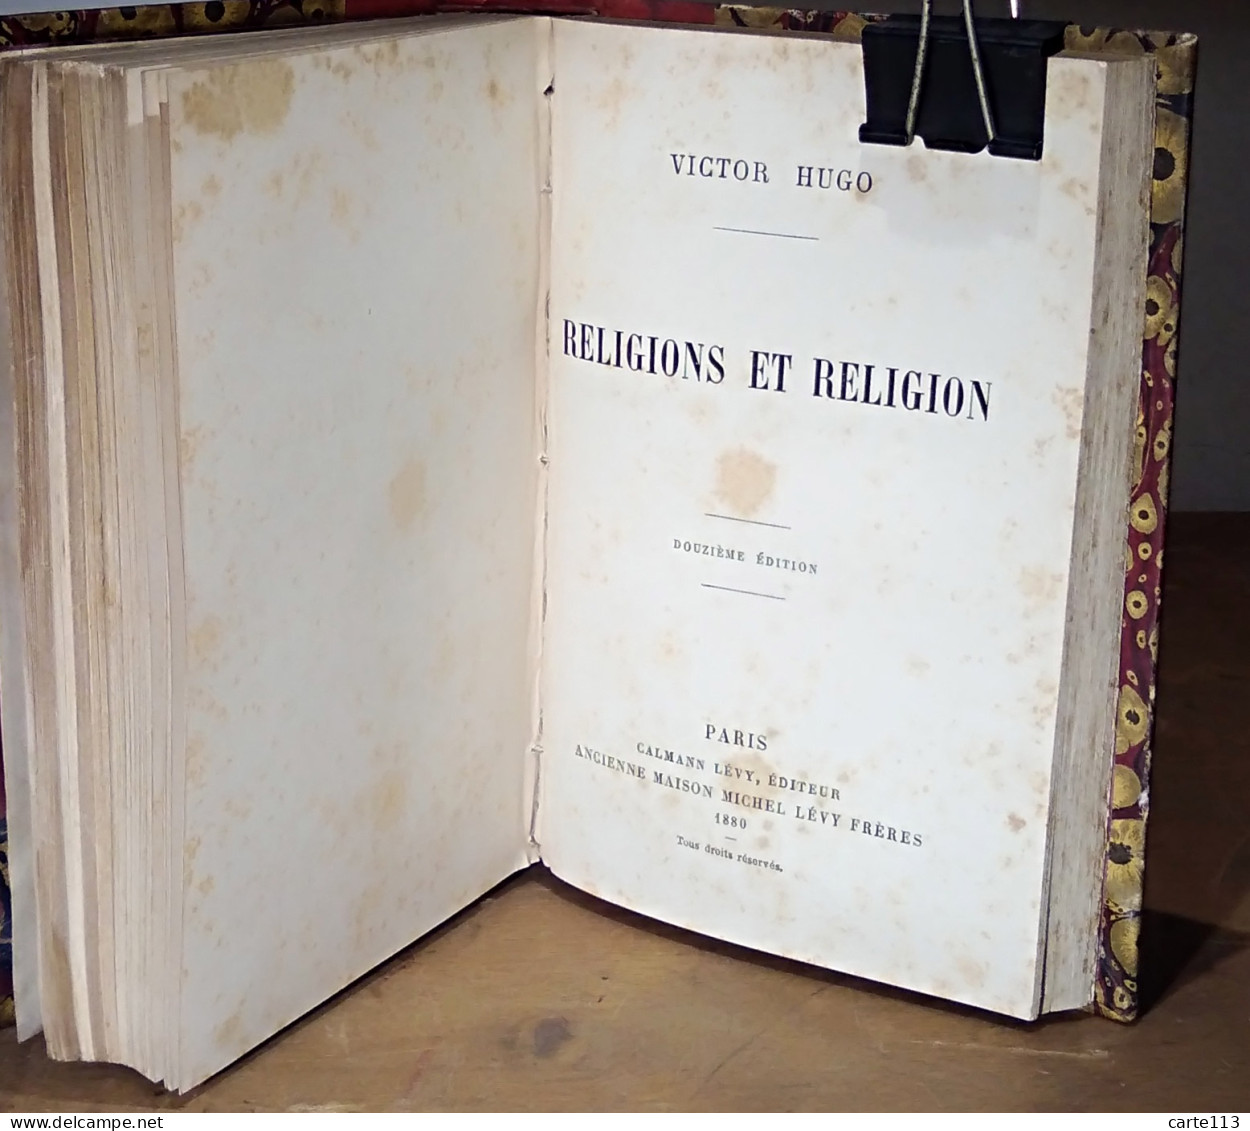 HUGO Victor - LE PAPE - L'ANE - RELIGIONS ET RELIGION - 1801-1900